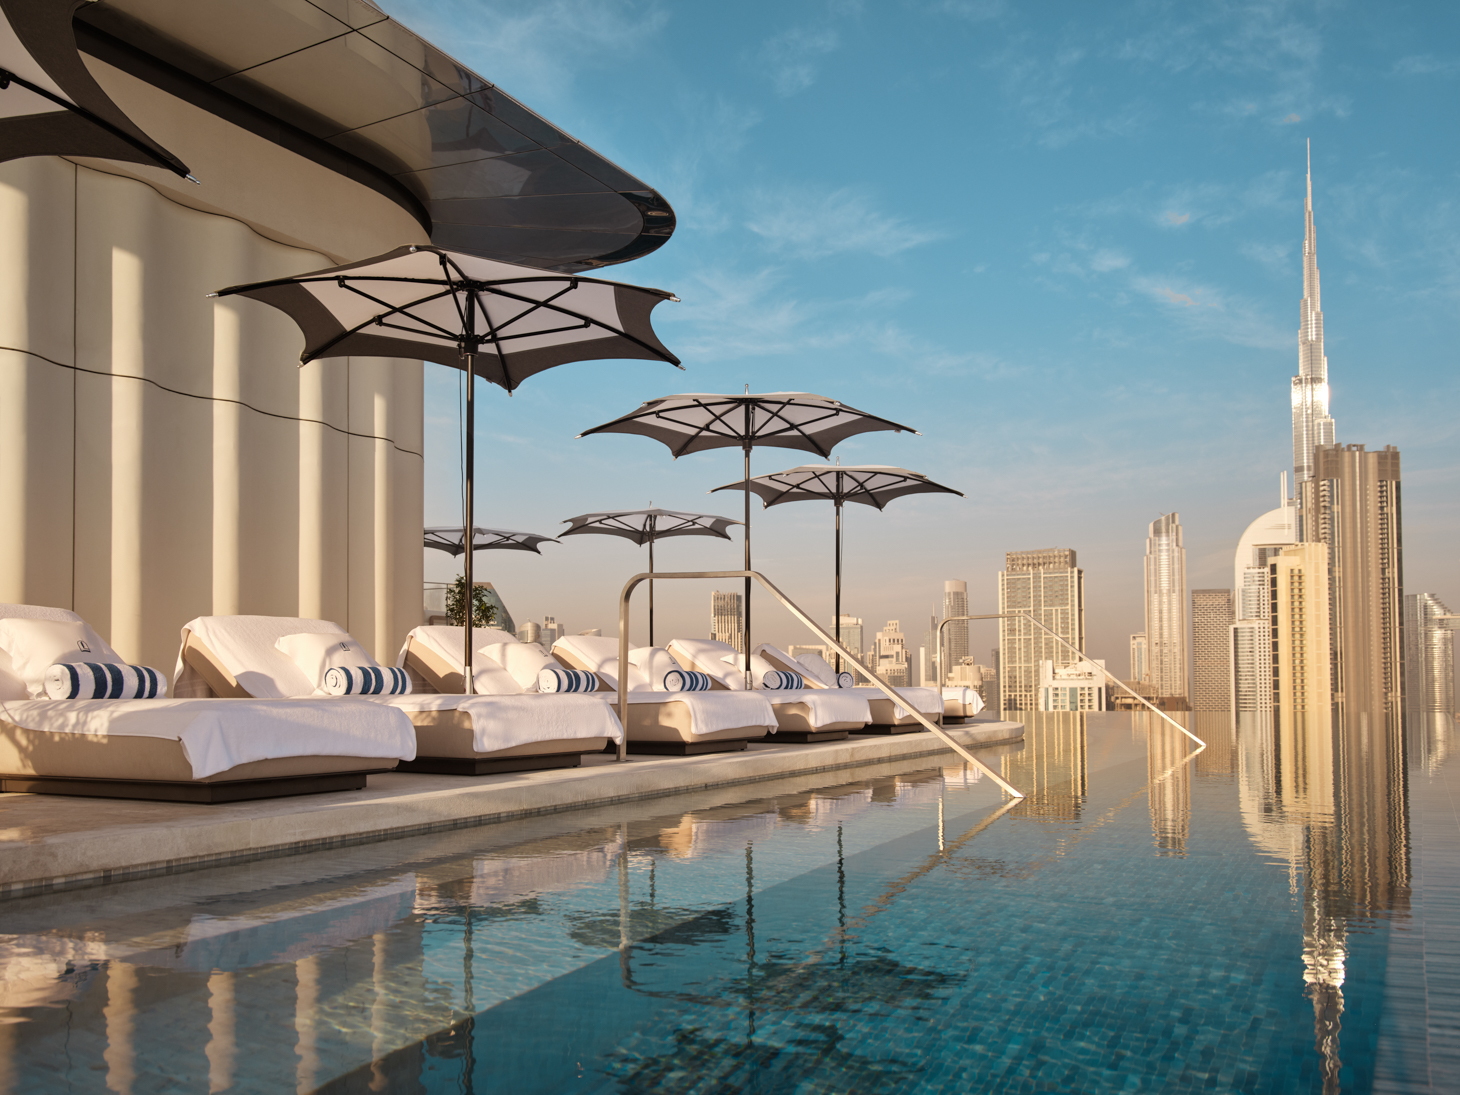 Inside The Lana, Dubai’s New Parisian-Style Hotel